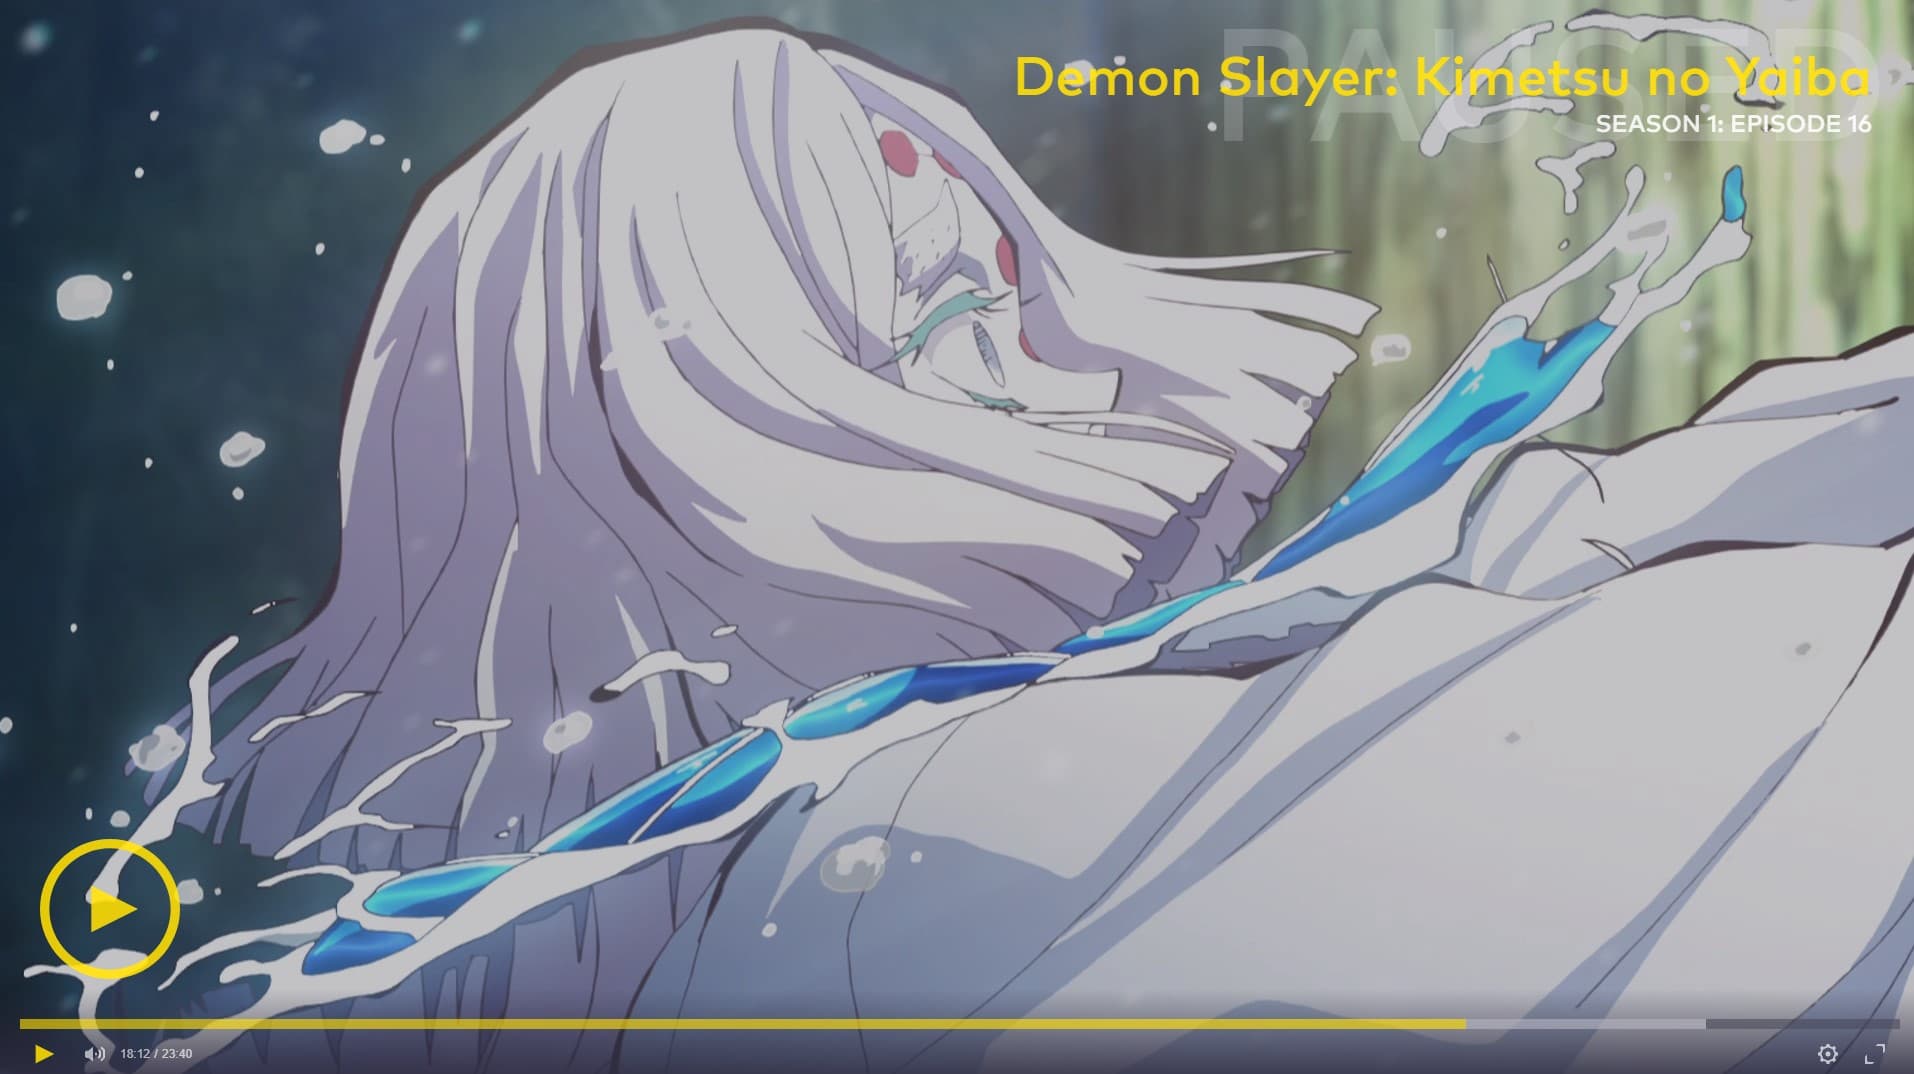 Screenshot from Demon Slayer: Kimetsu no Yaiba on VRV.